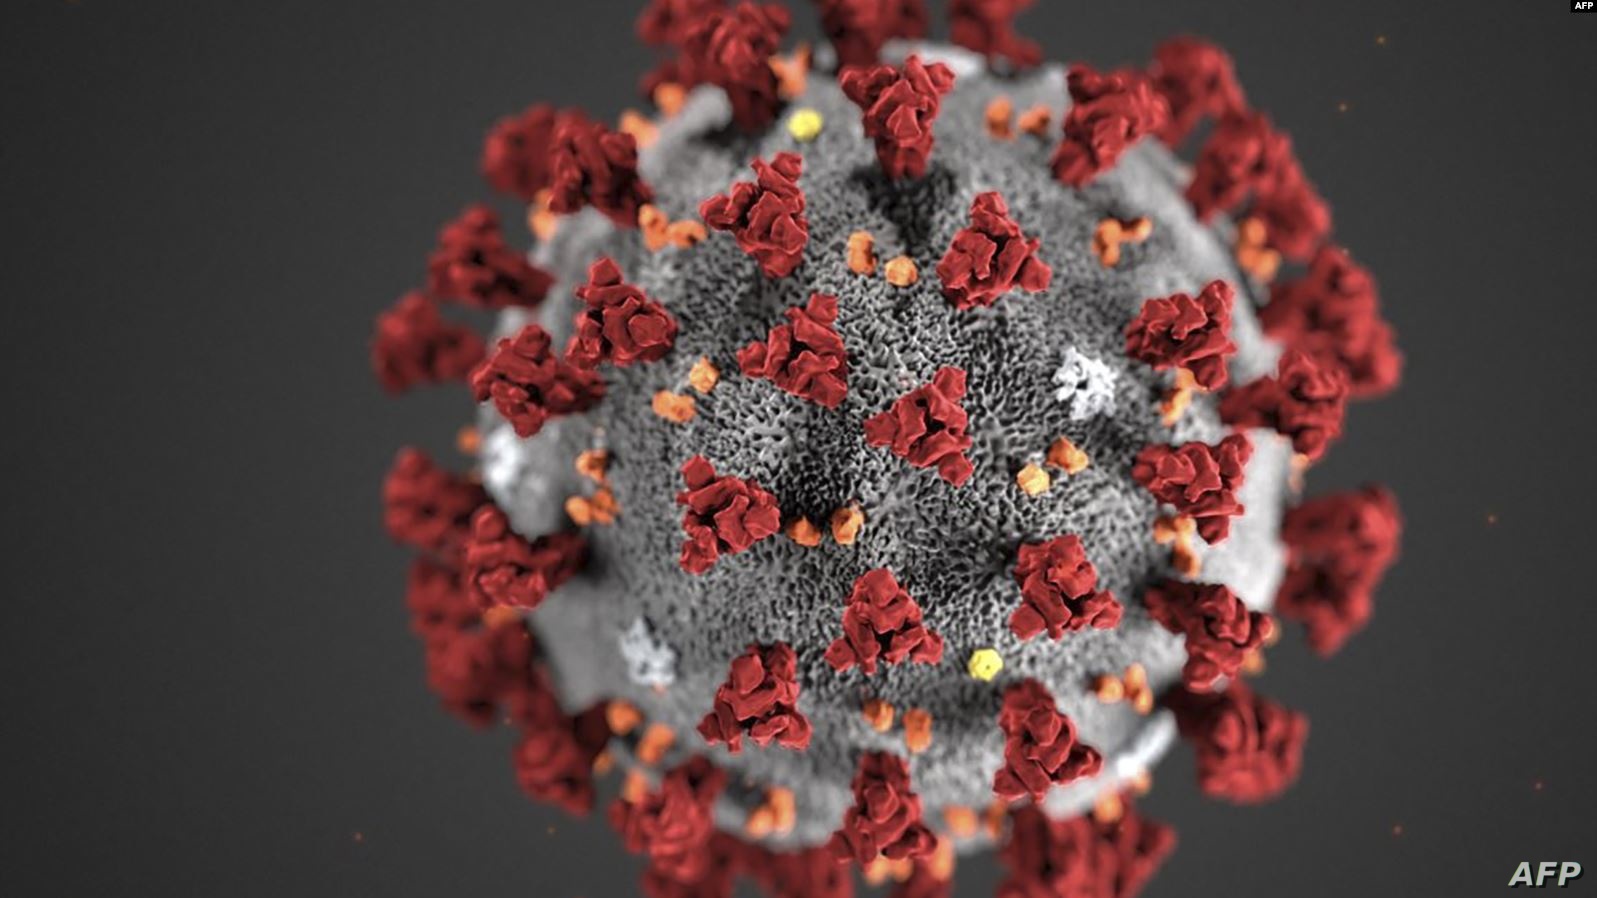   أول دولة أوروبية تعلن وقف تفشى فيروس كورونا